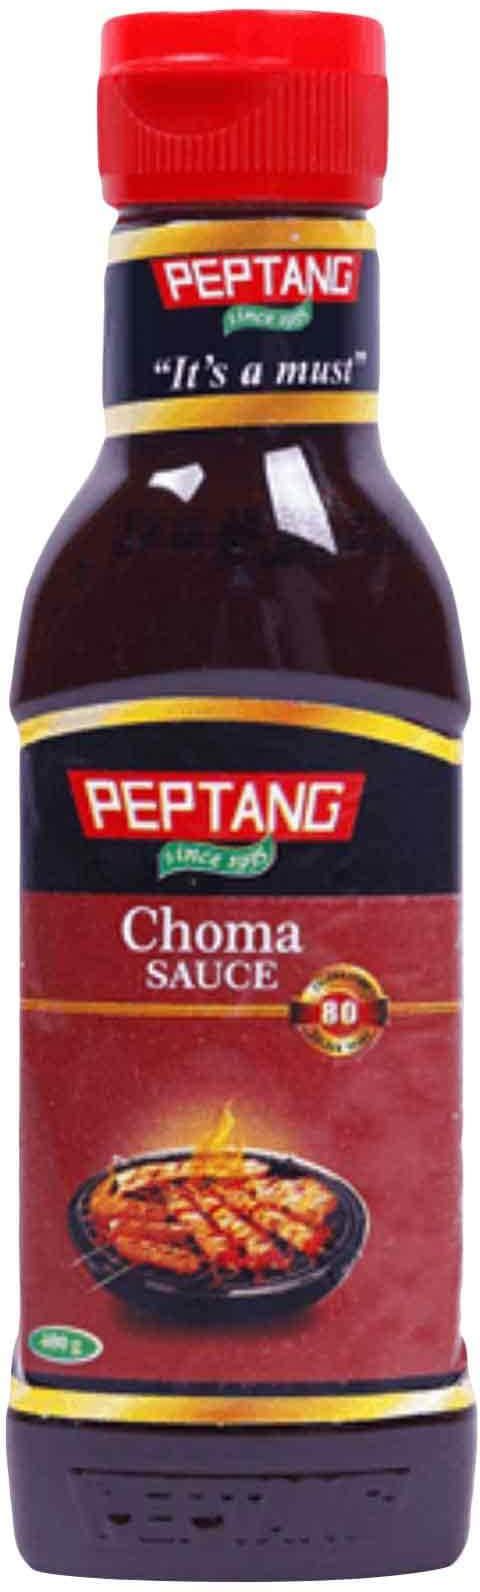 Peptang Choma Sauce 400g